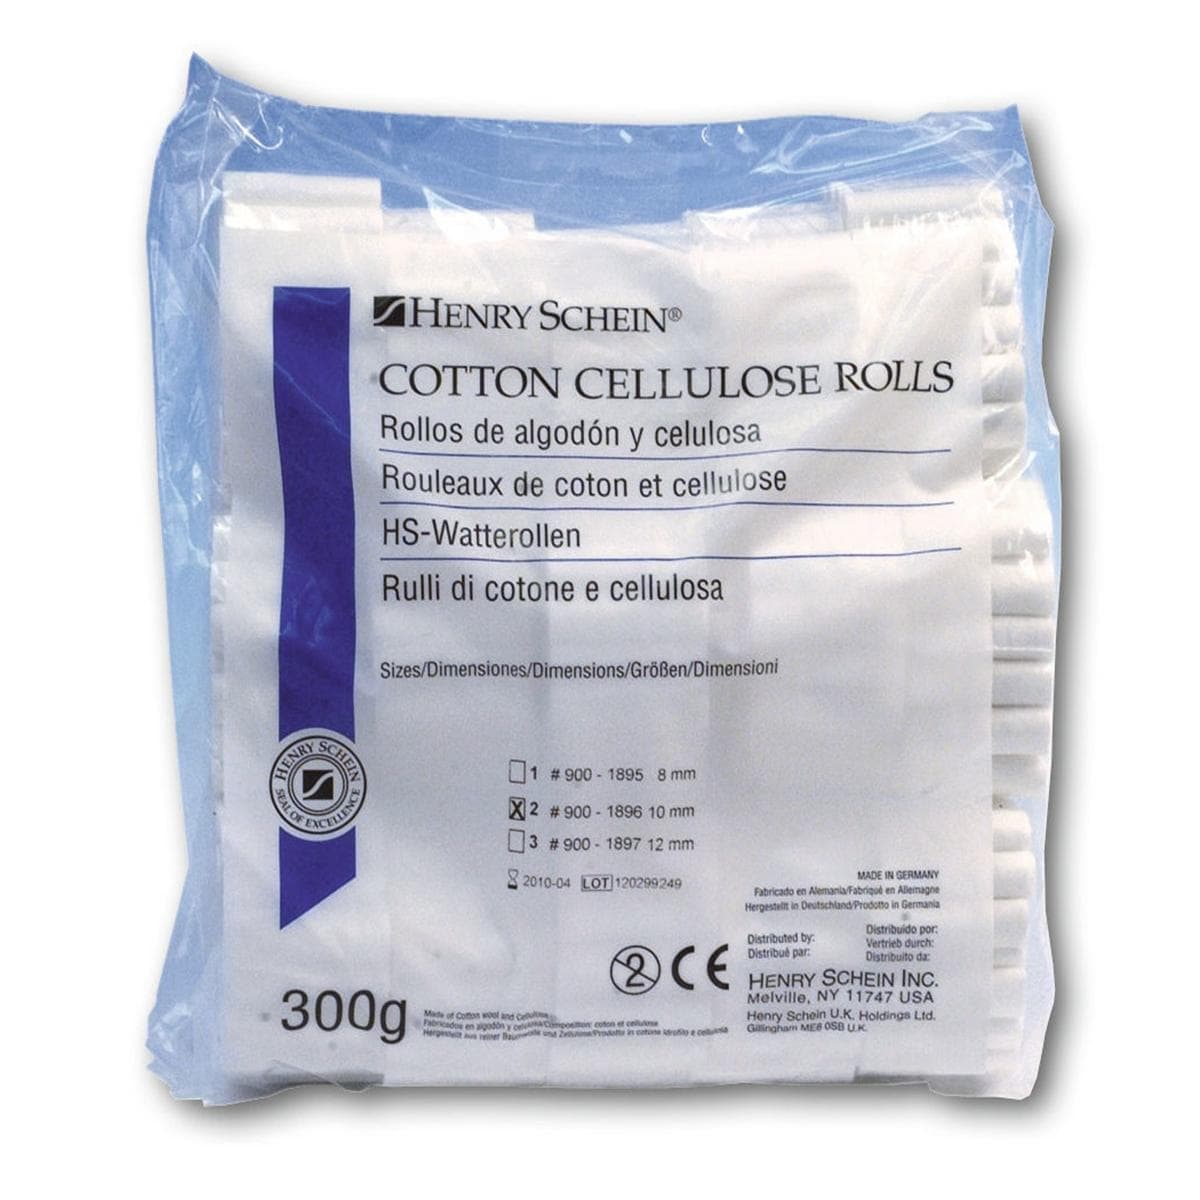 HS-Watterollen, Cotton Cellulose Rolls - Größe 2, Ø 10 mm, Packung 300 g